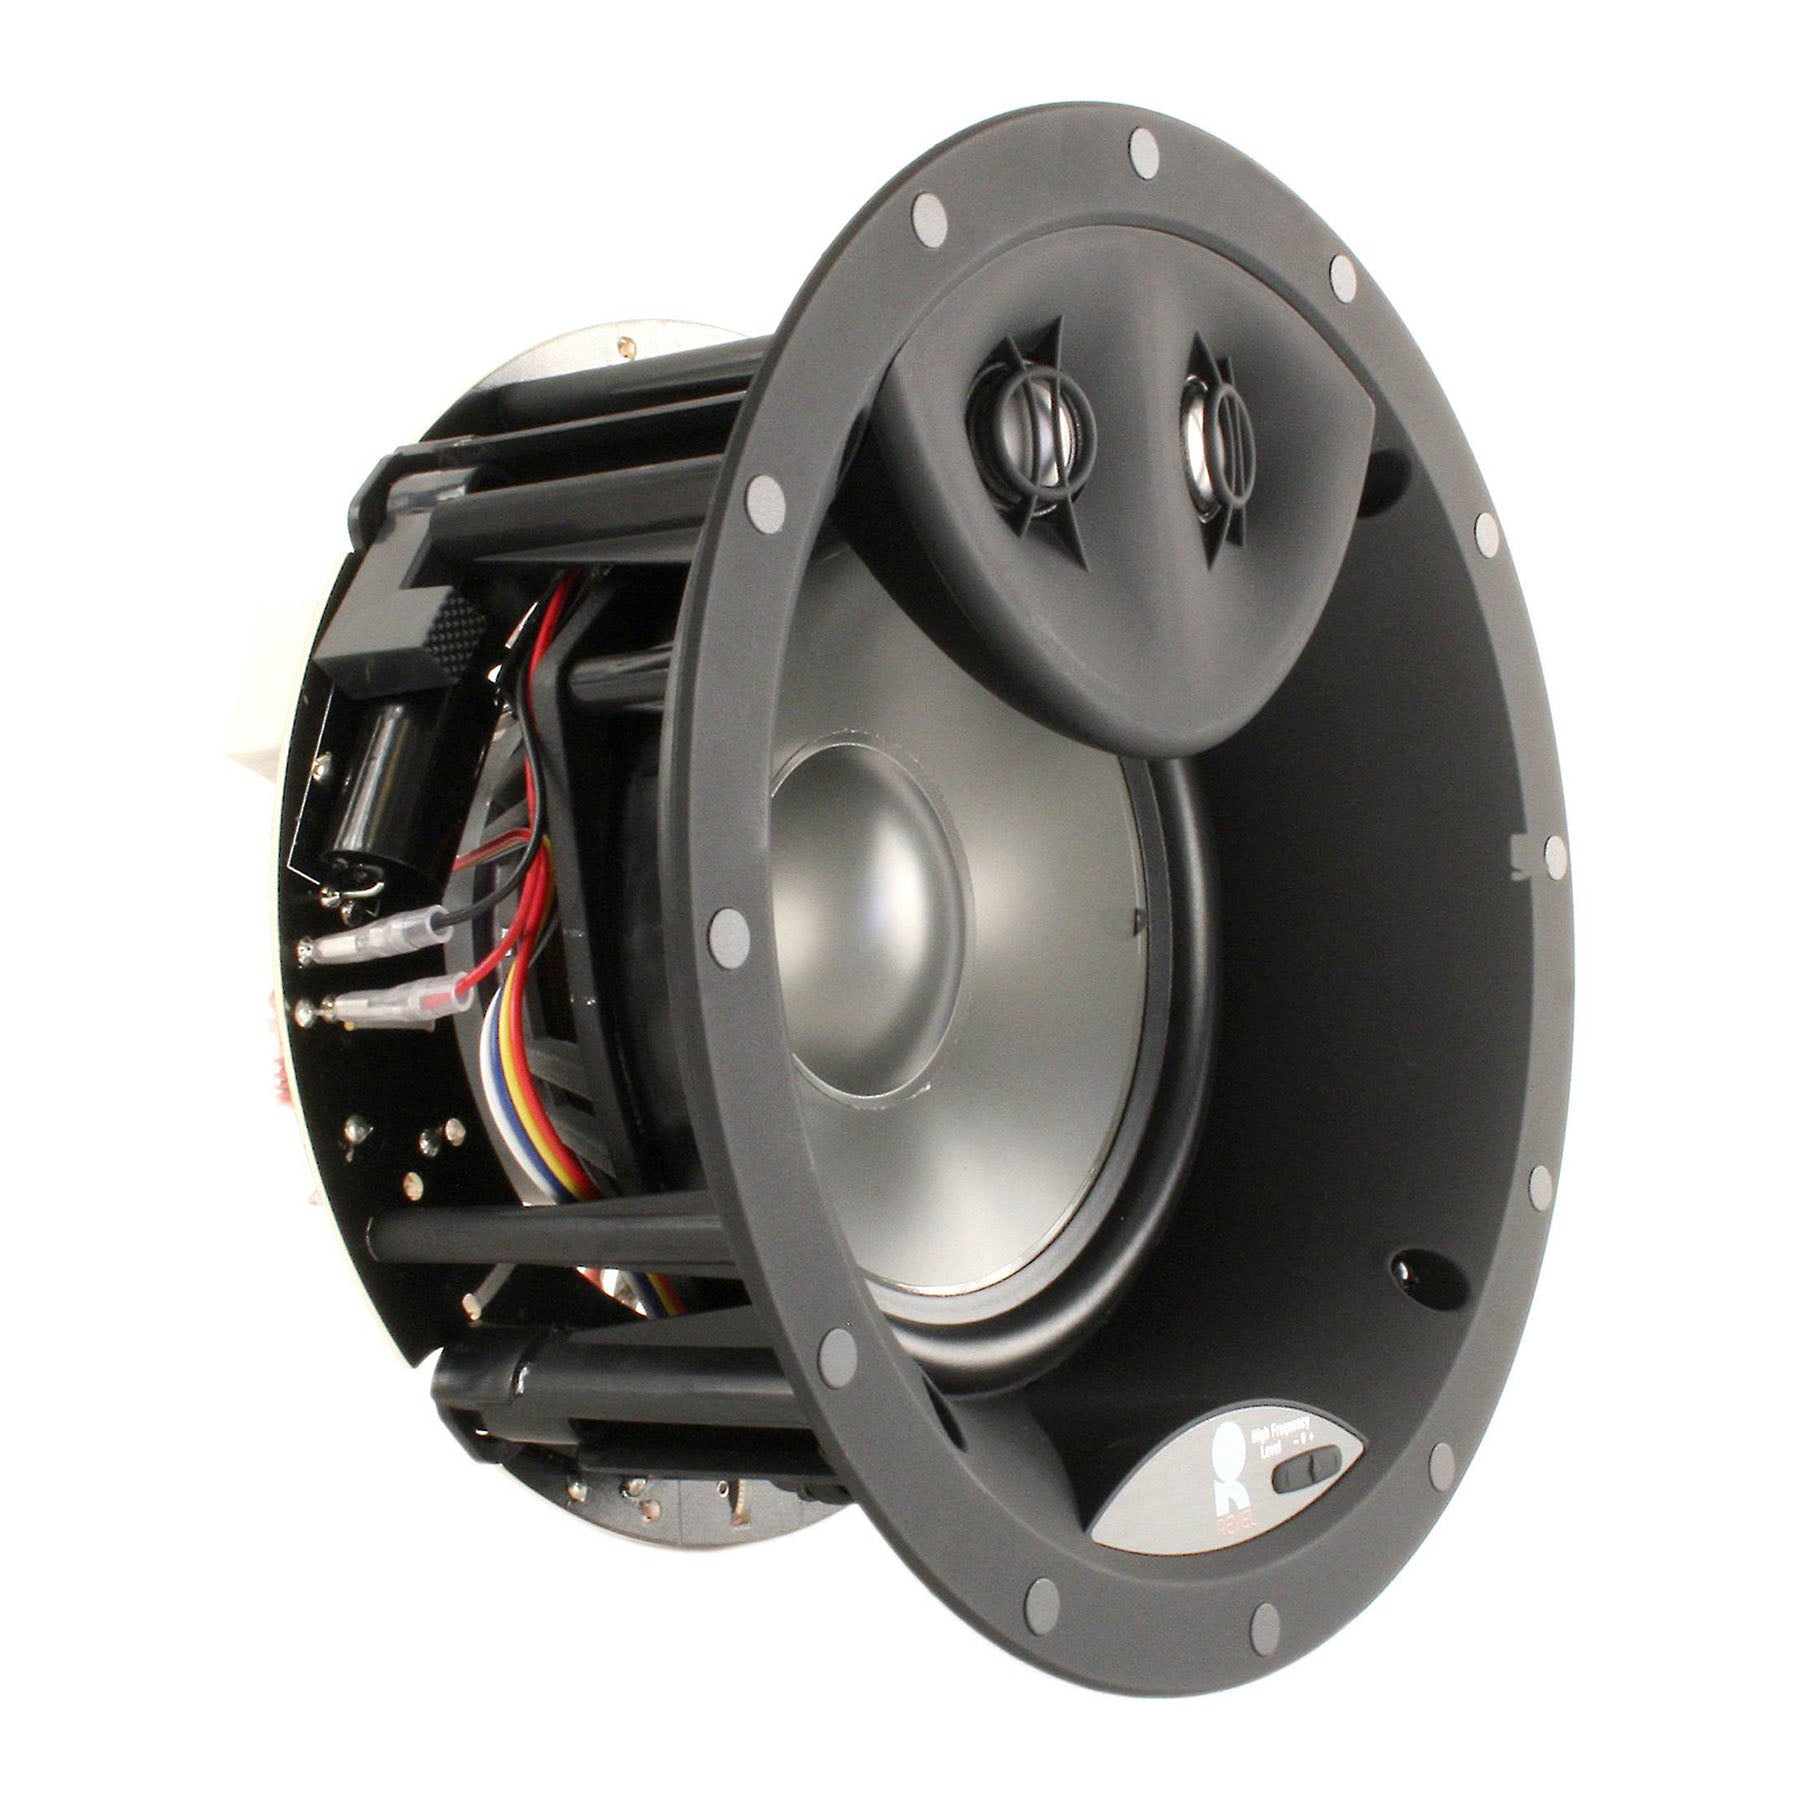 Revel C563DT 6-1/2" Dual-Tweeter In-ceiling Loudspeaker